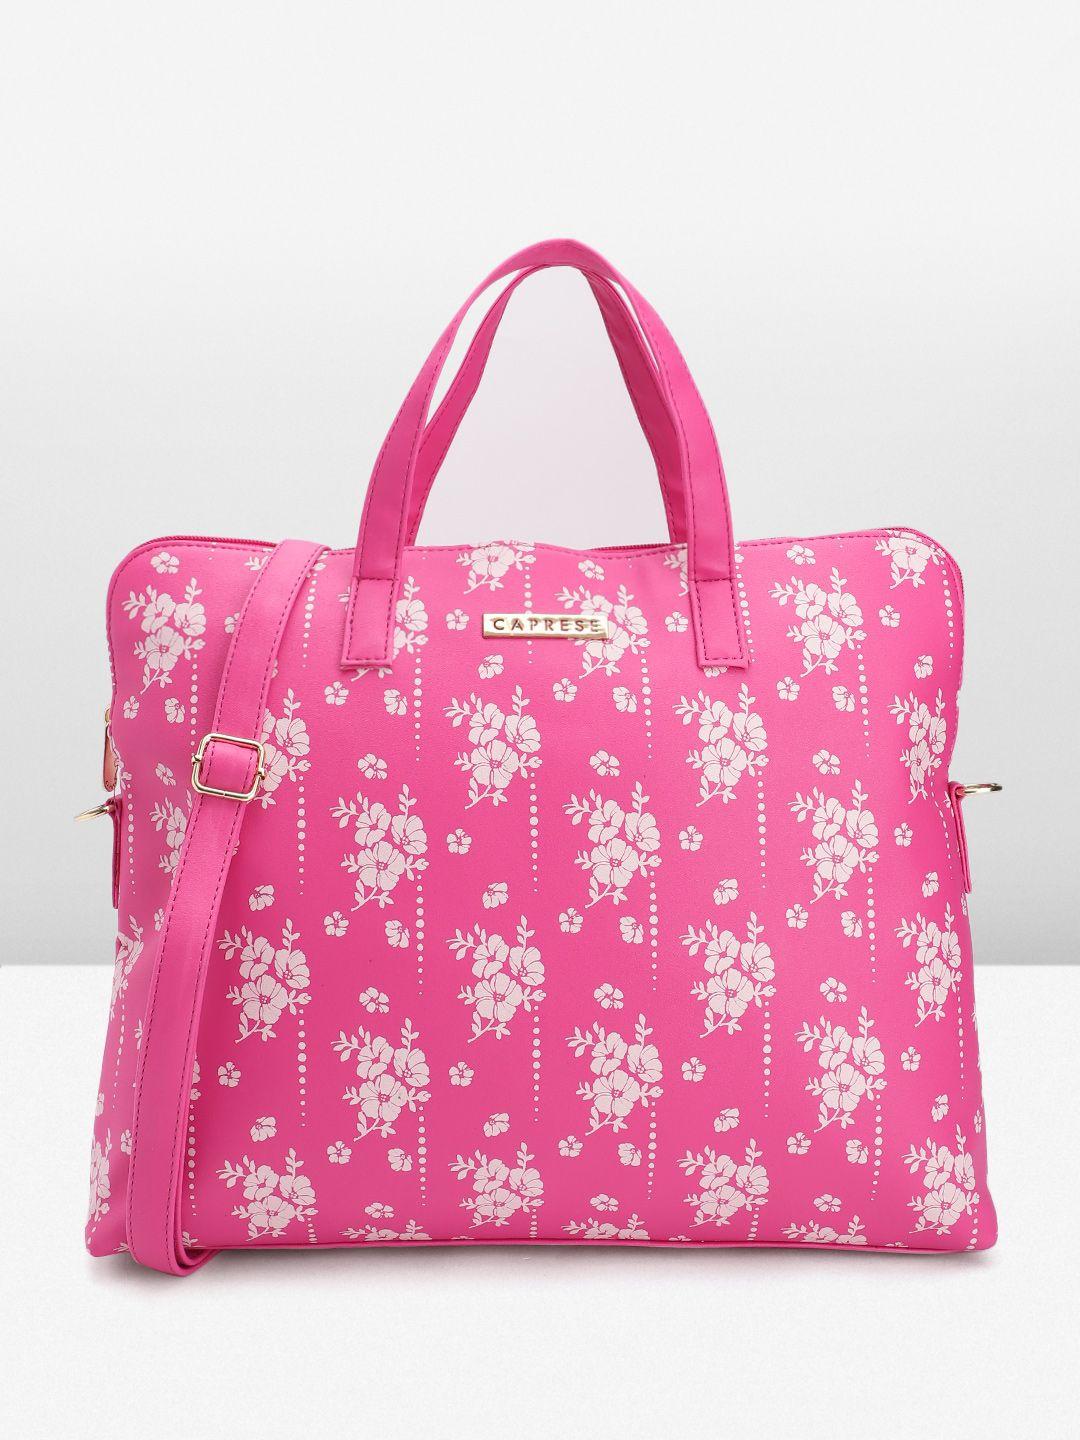 caprese women floral printed laptop bag